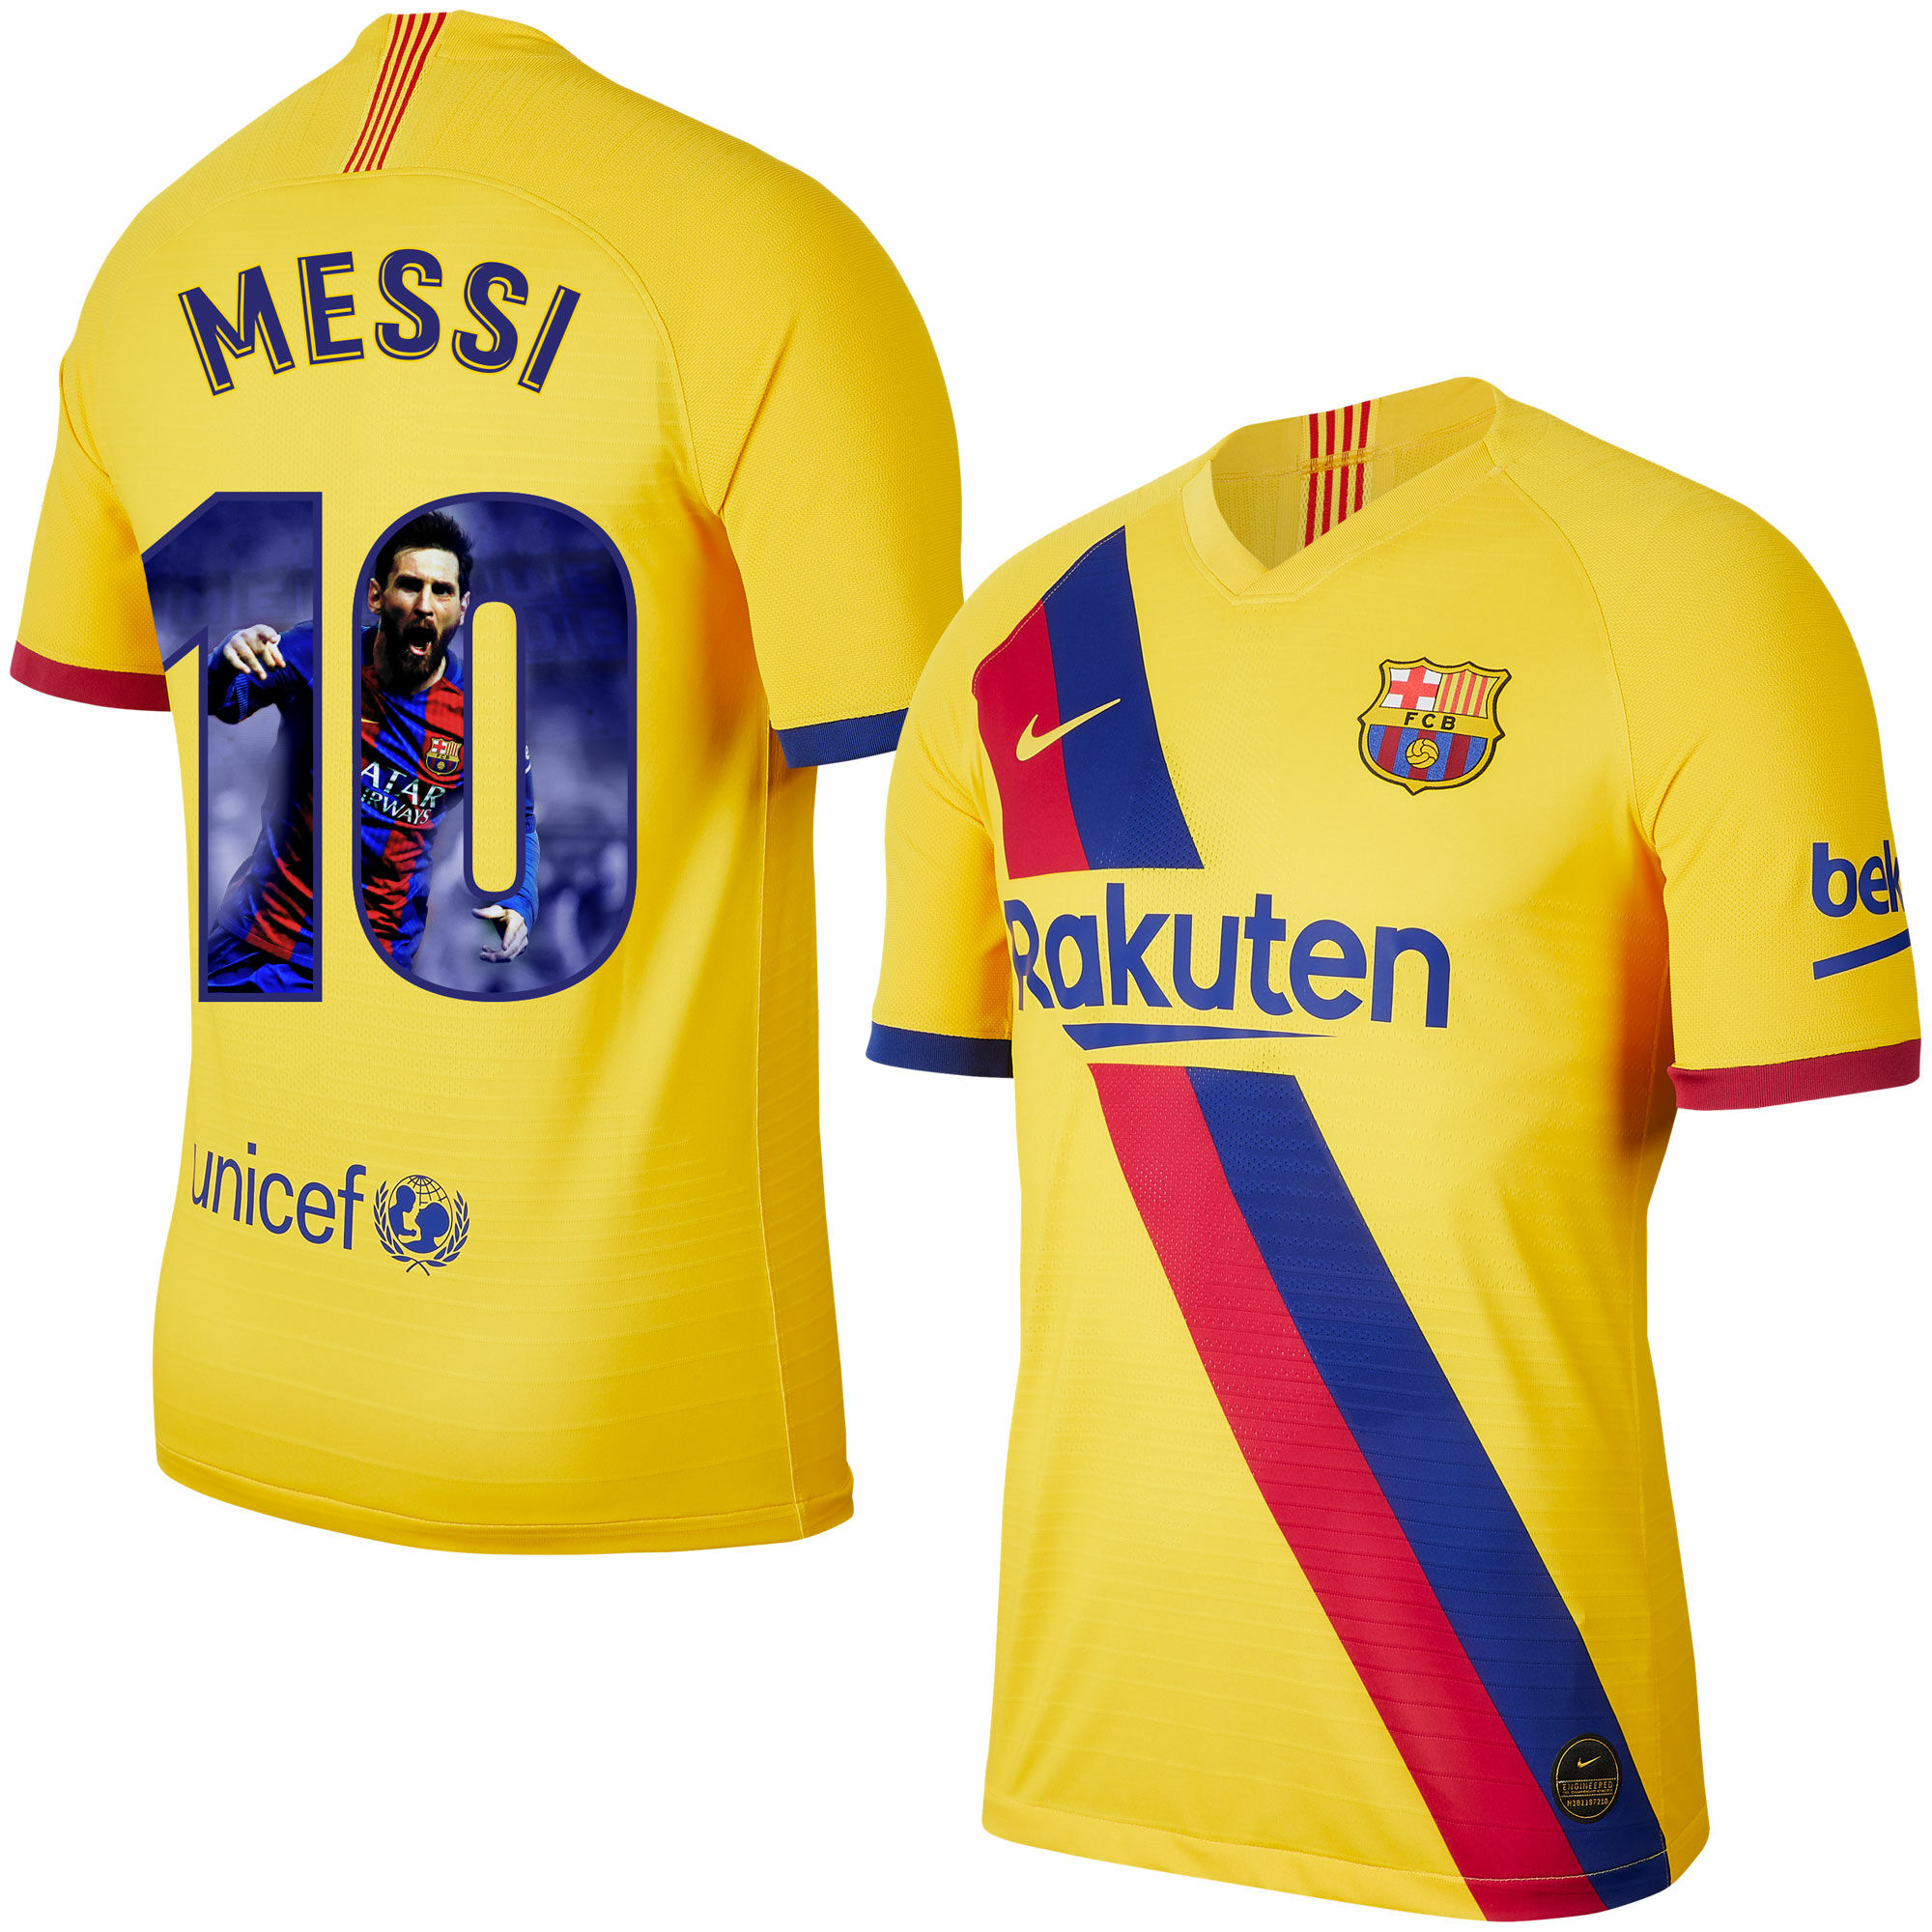 Barcelona - Dres fotbalový - sezóna 2019/20, žlutý, číslo 10, Lionel Messi, potisk s obrázkem, venkovní